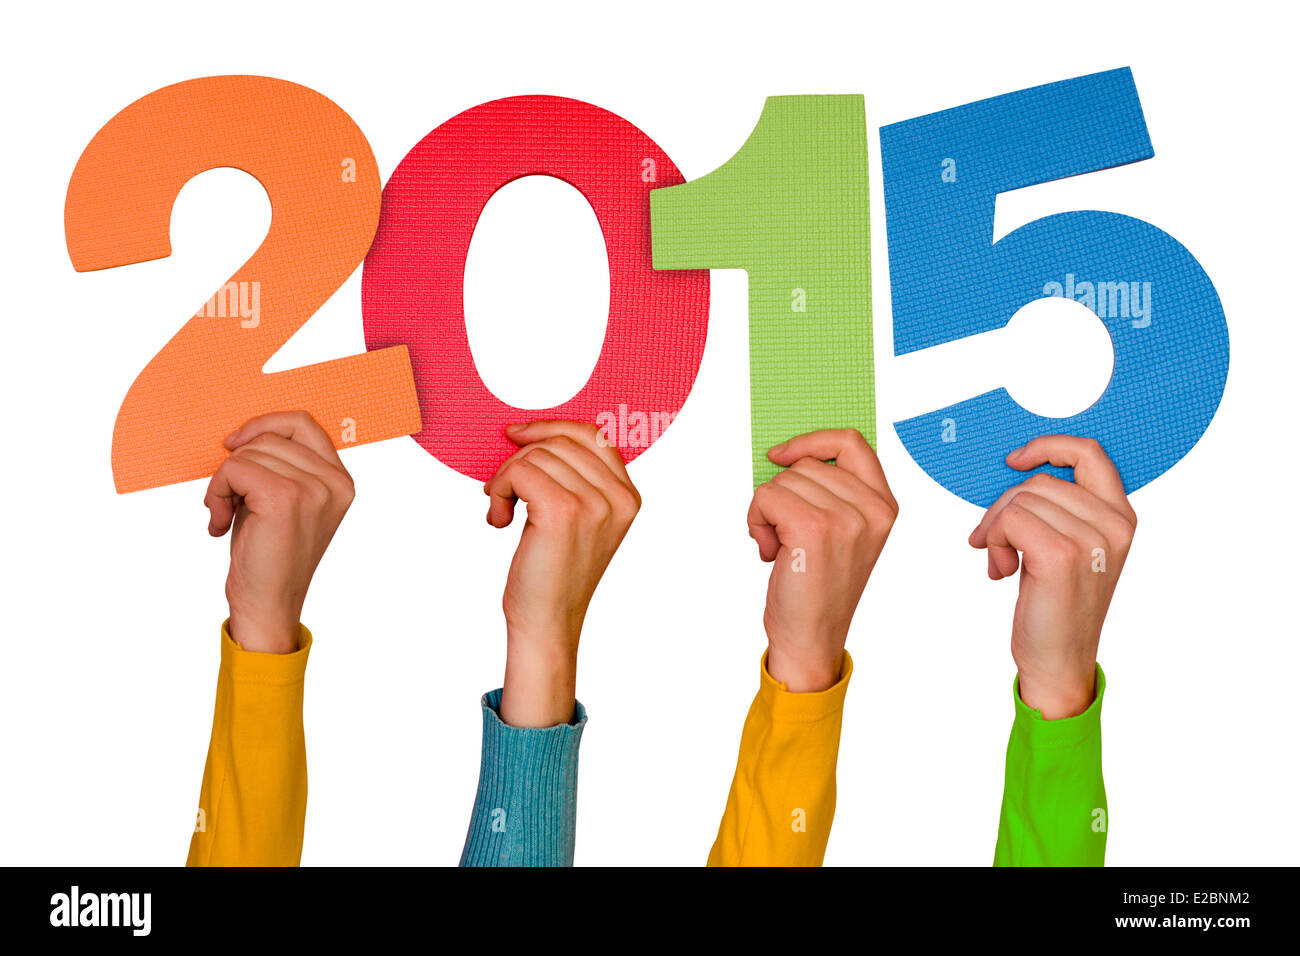 Les mains avec numéros de couleur indique l'année 2015. Isolé sur fond blanc Banque D'Images